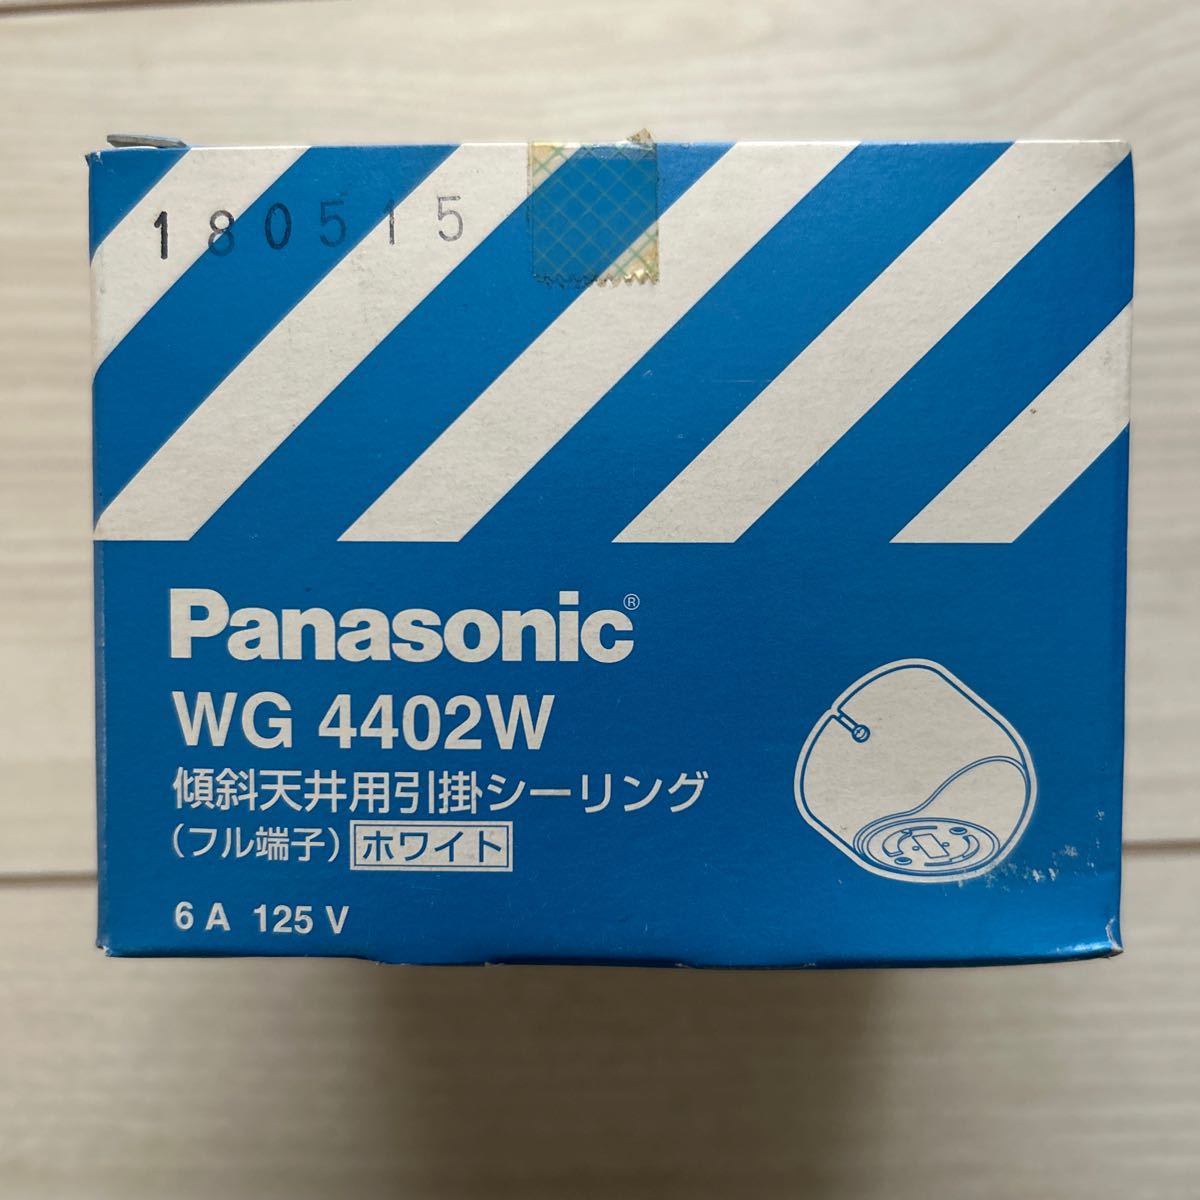 [F59]Panasonic WG4402W наклонение потолок для .. изоляция ( полный терминал ) белый Panasonic 